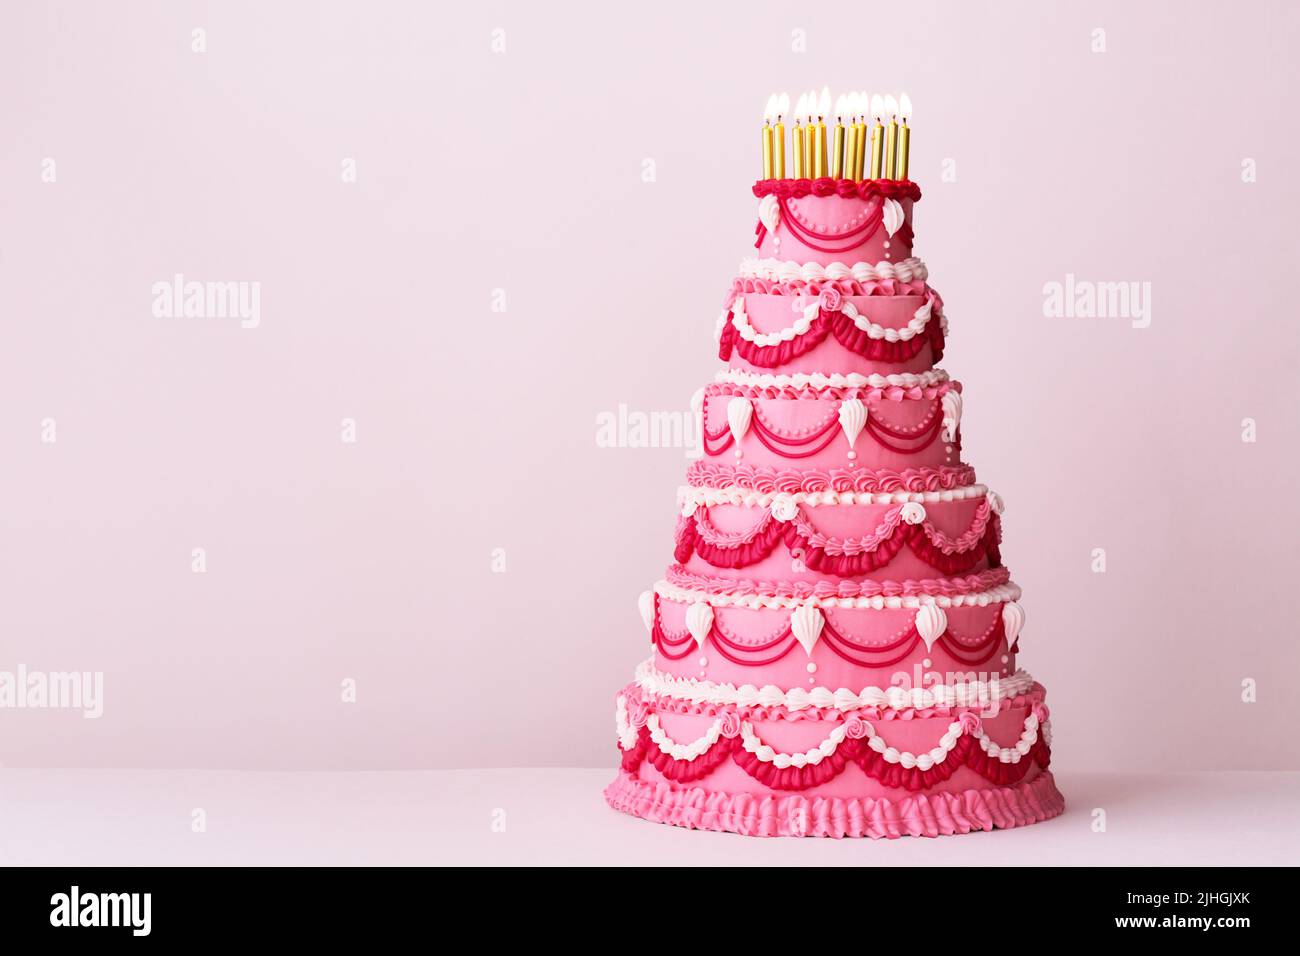 Extravagante pastel de cumpleaños de color rosa escalonado decorado con adornos de ribetes estilo crema vintage y velas de cumpleaños doradas Foto de stock